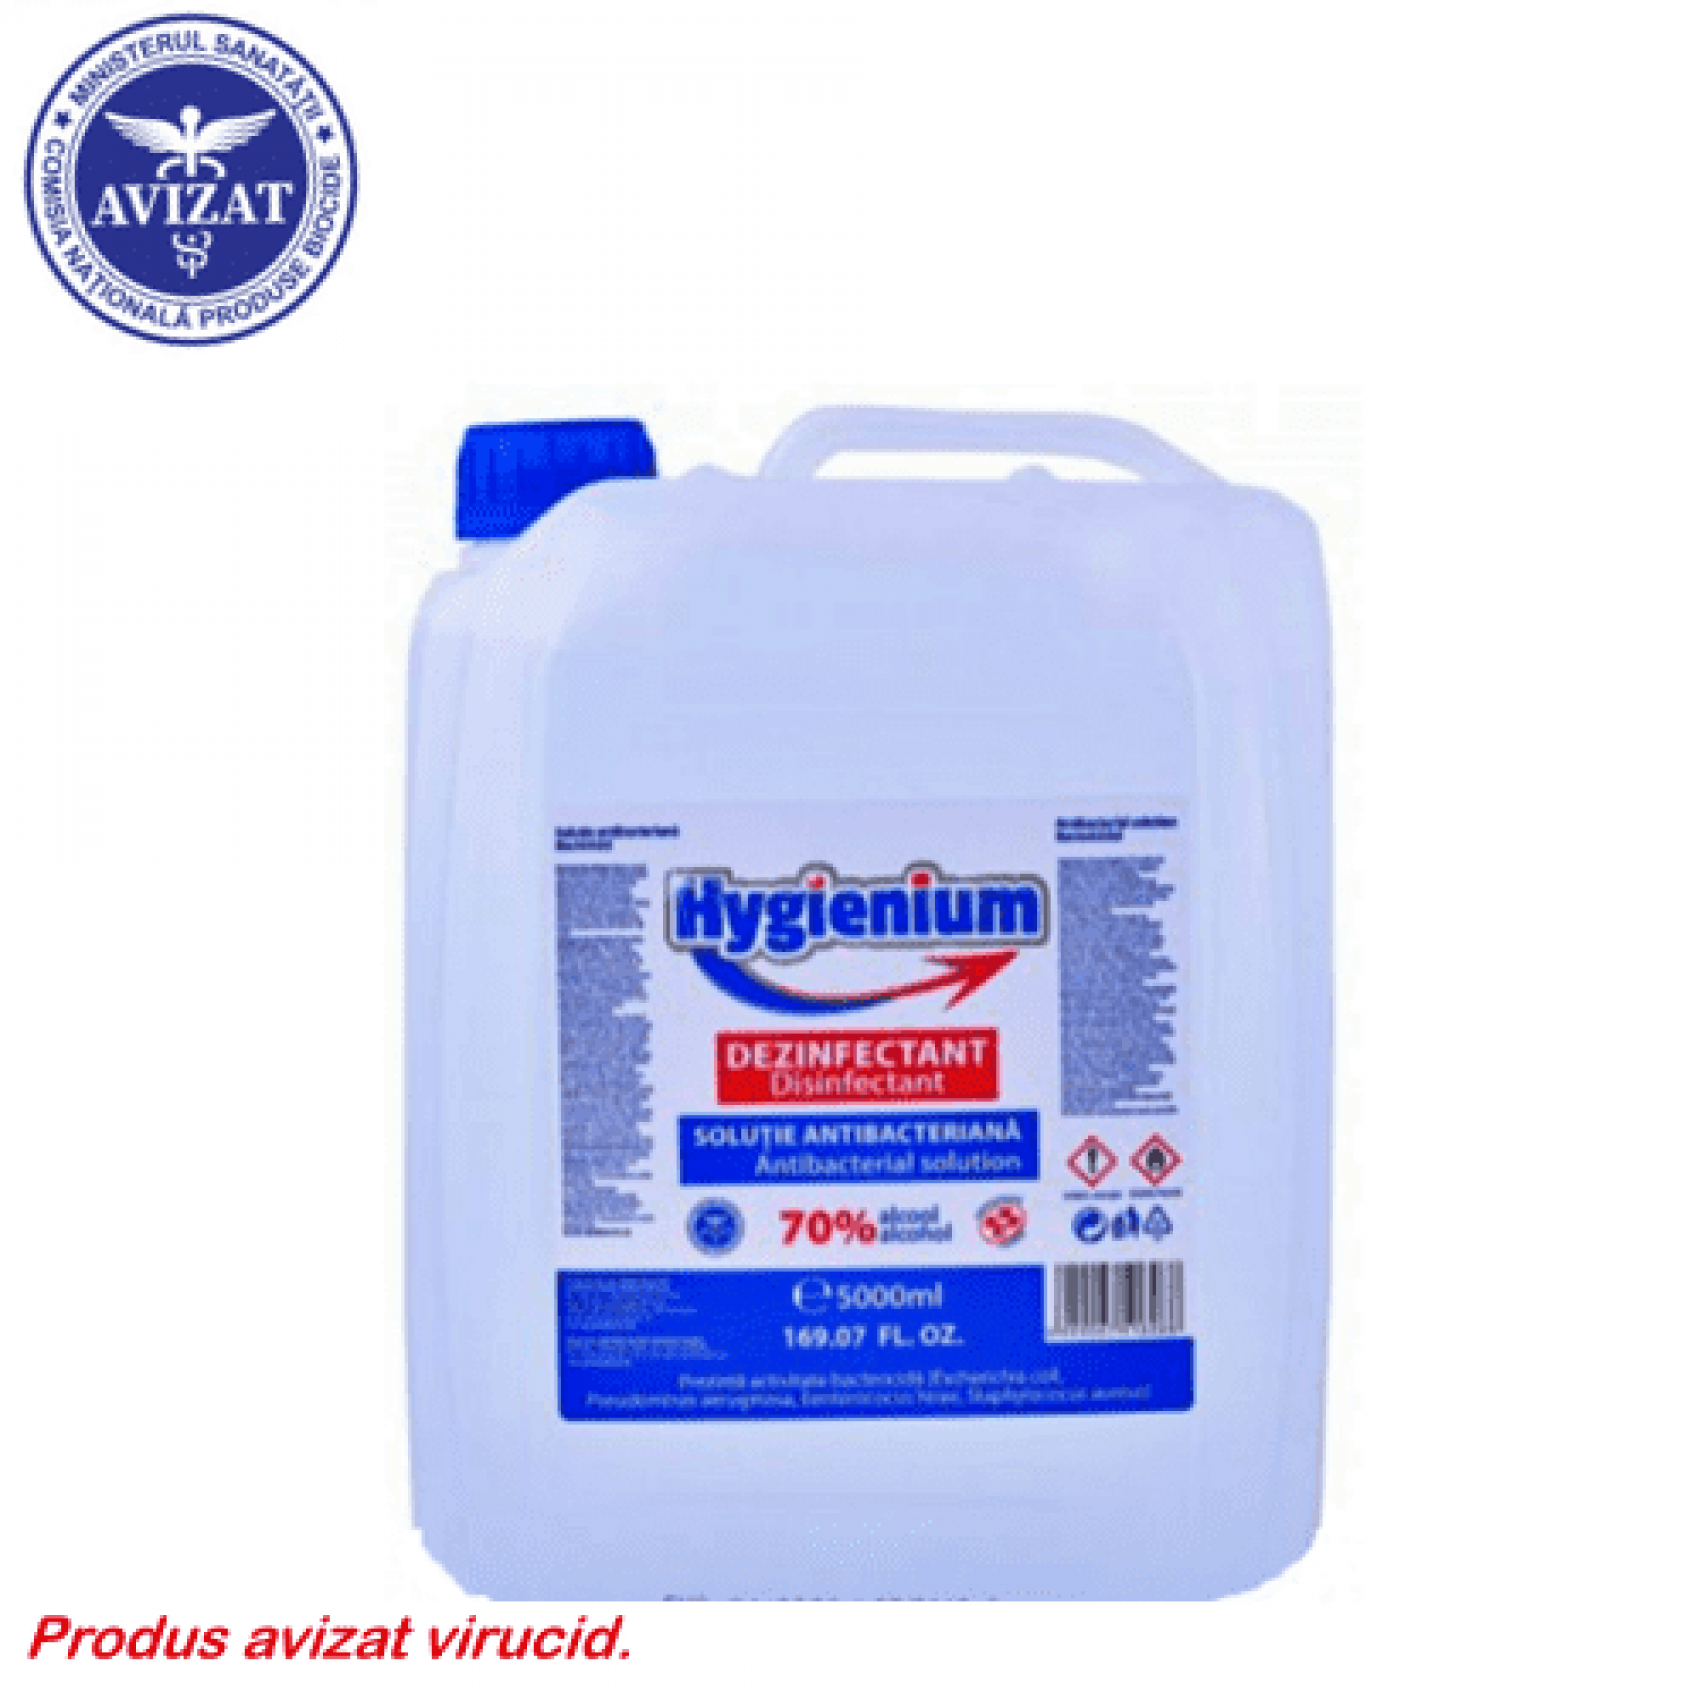 Hygienium dezinfectant virucid solutie pentru maini - 5 litri